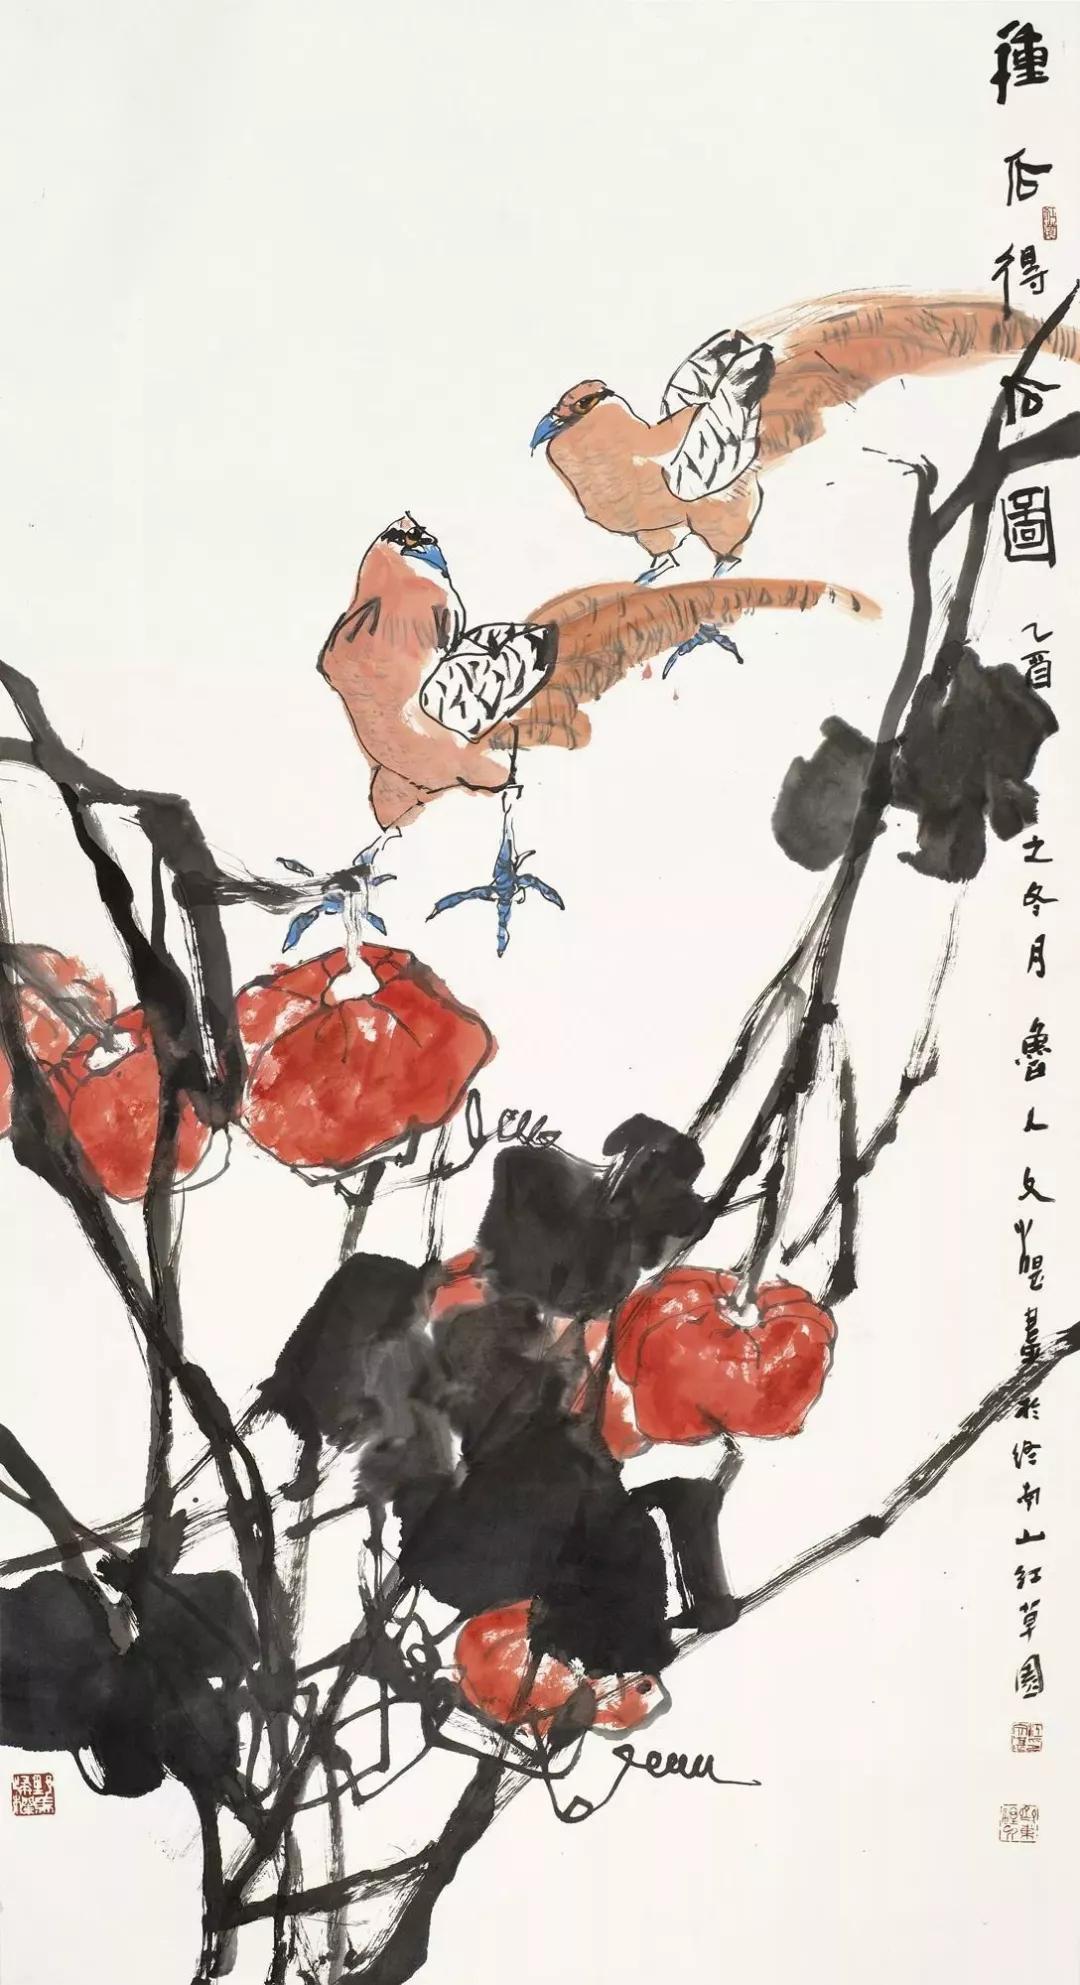 第1423期江文湛2018年最高成交价前10幅作品中国画家拍卖成交指数